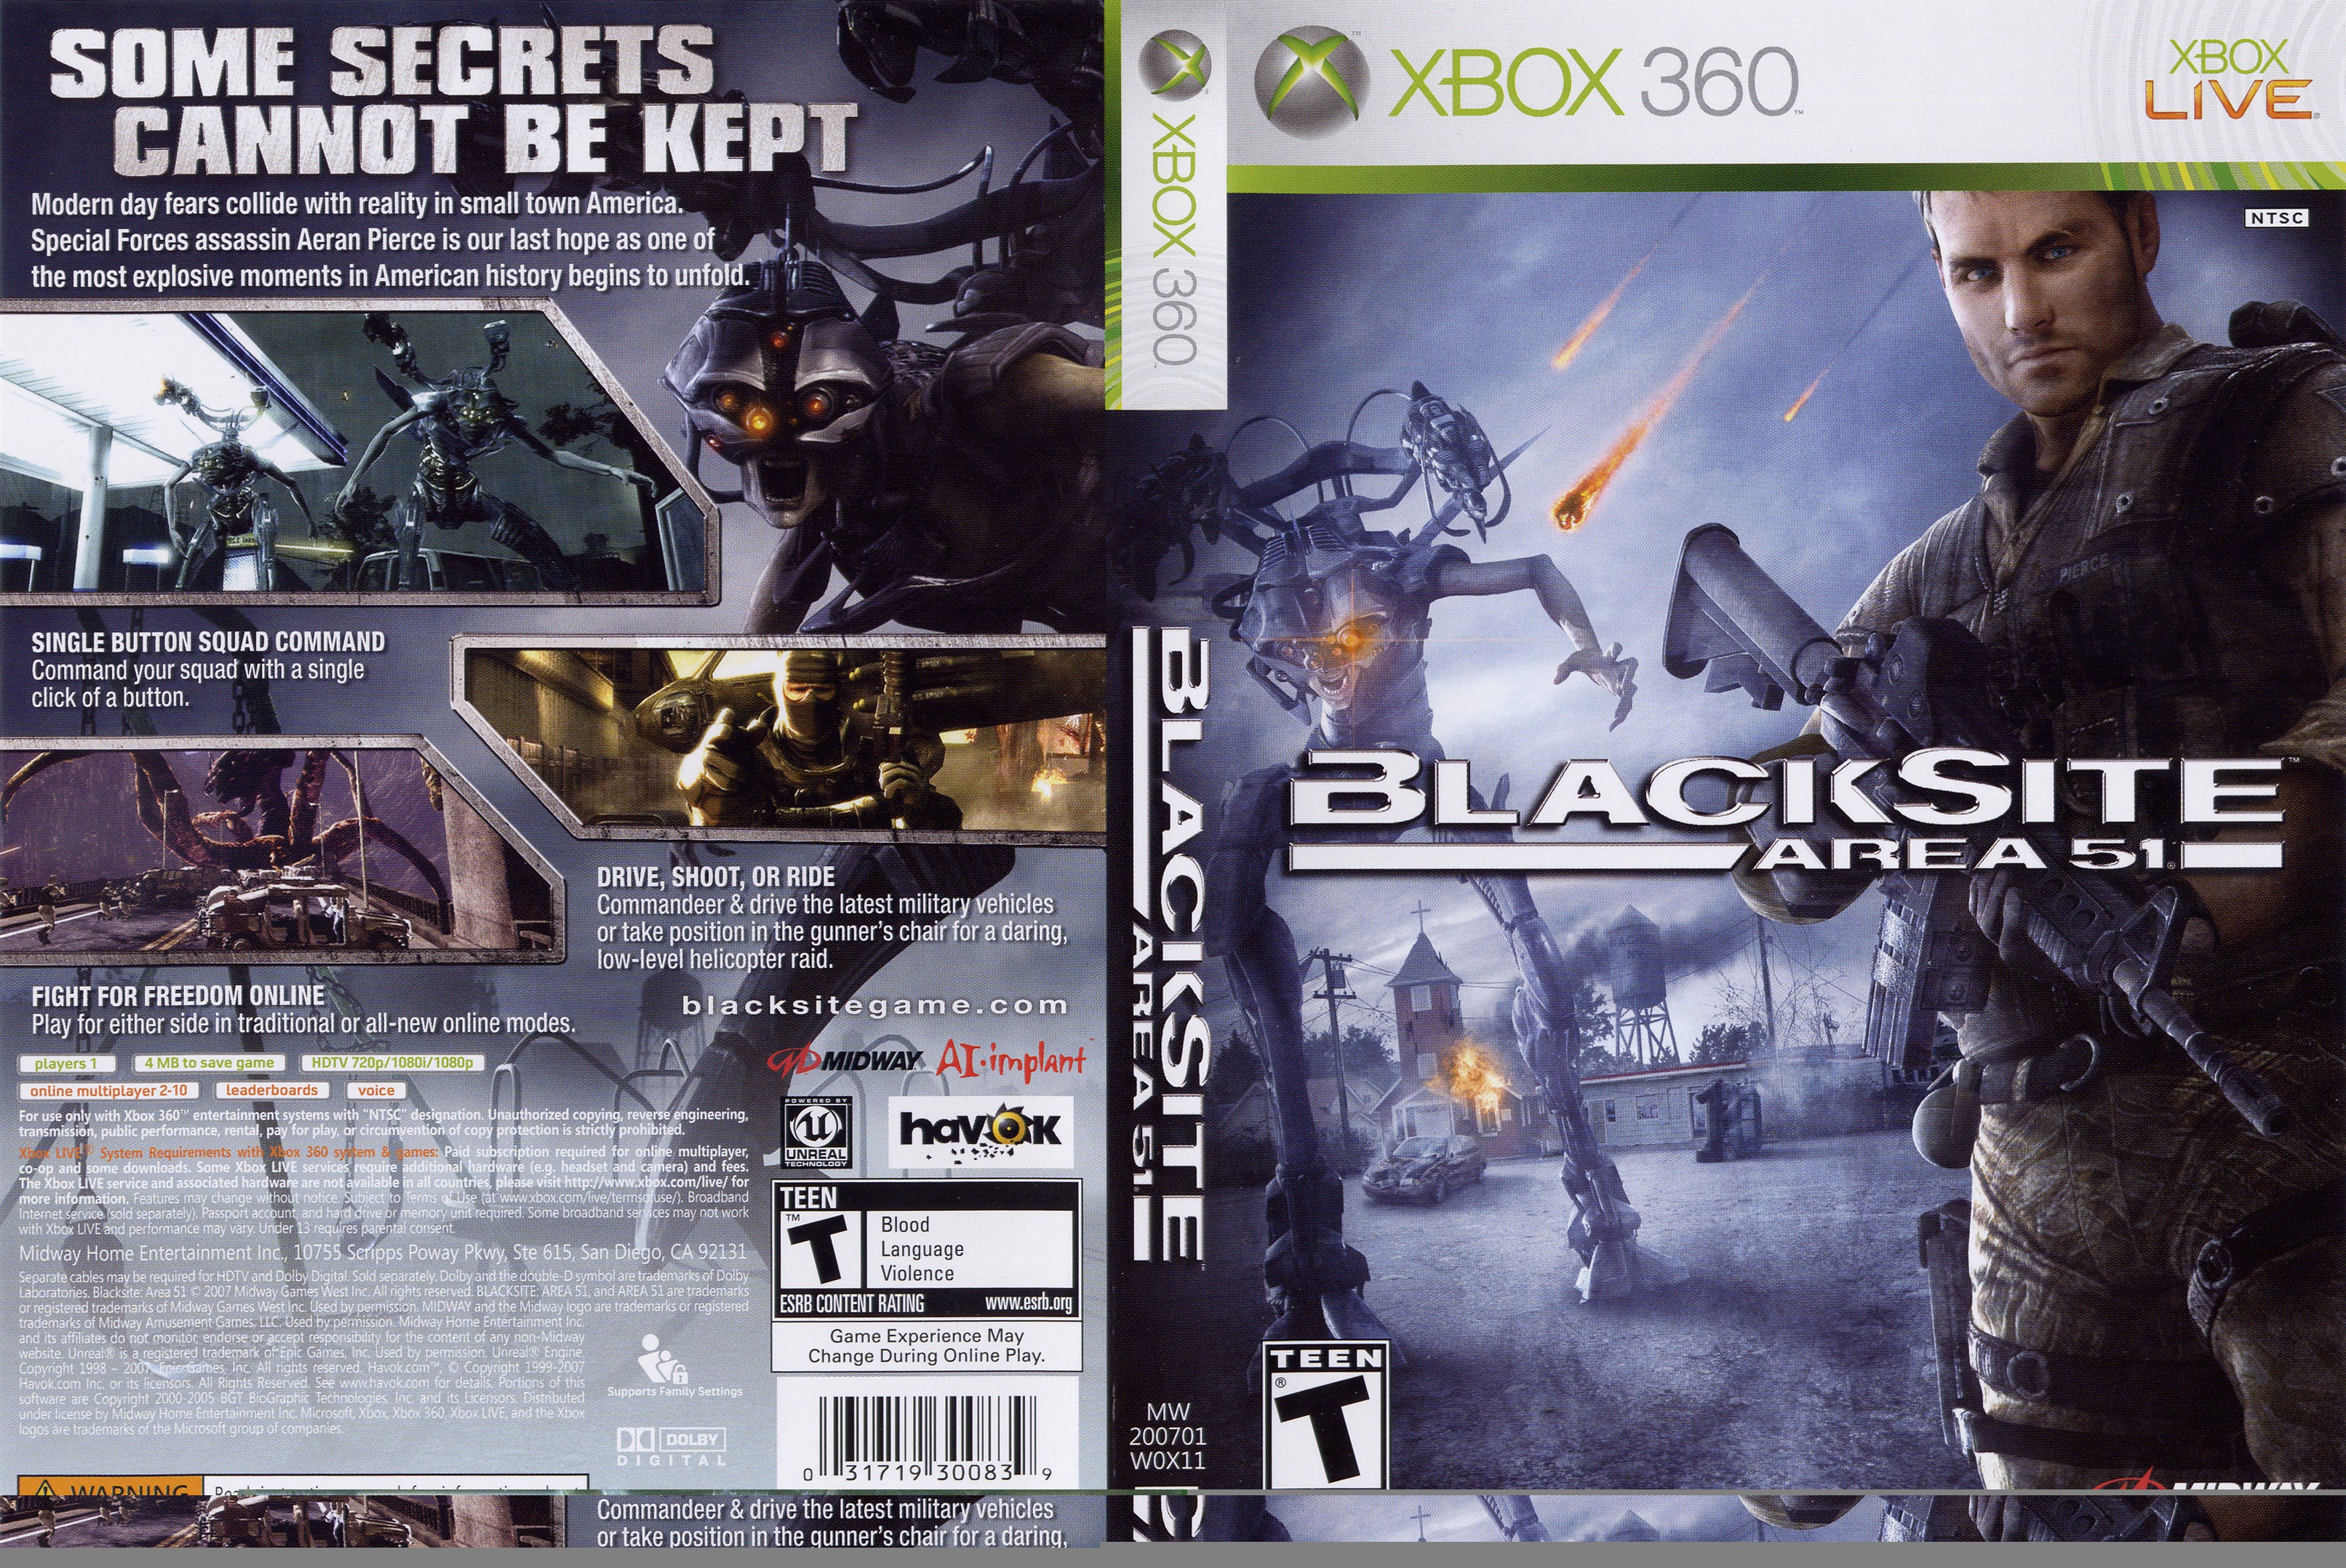  Blacksite: Area 51 - PC : Video Games